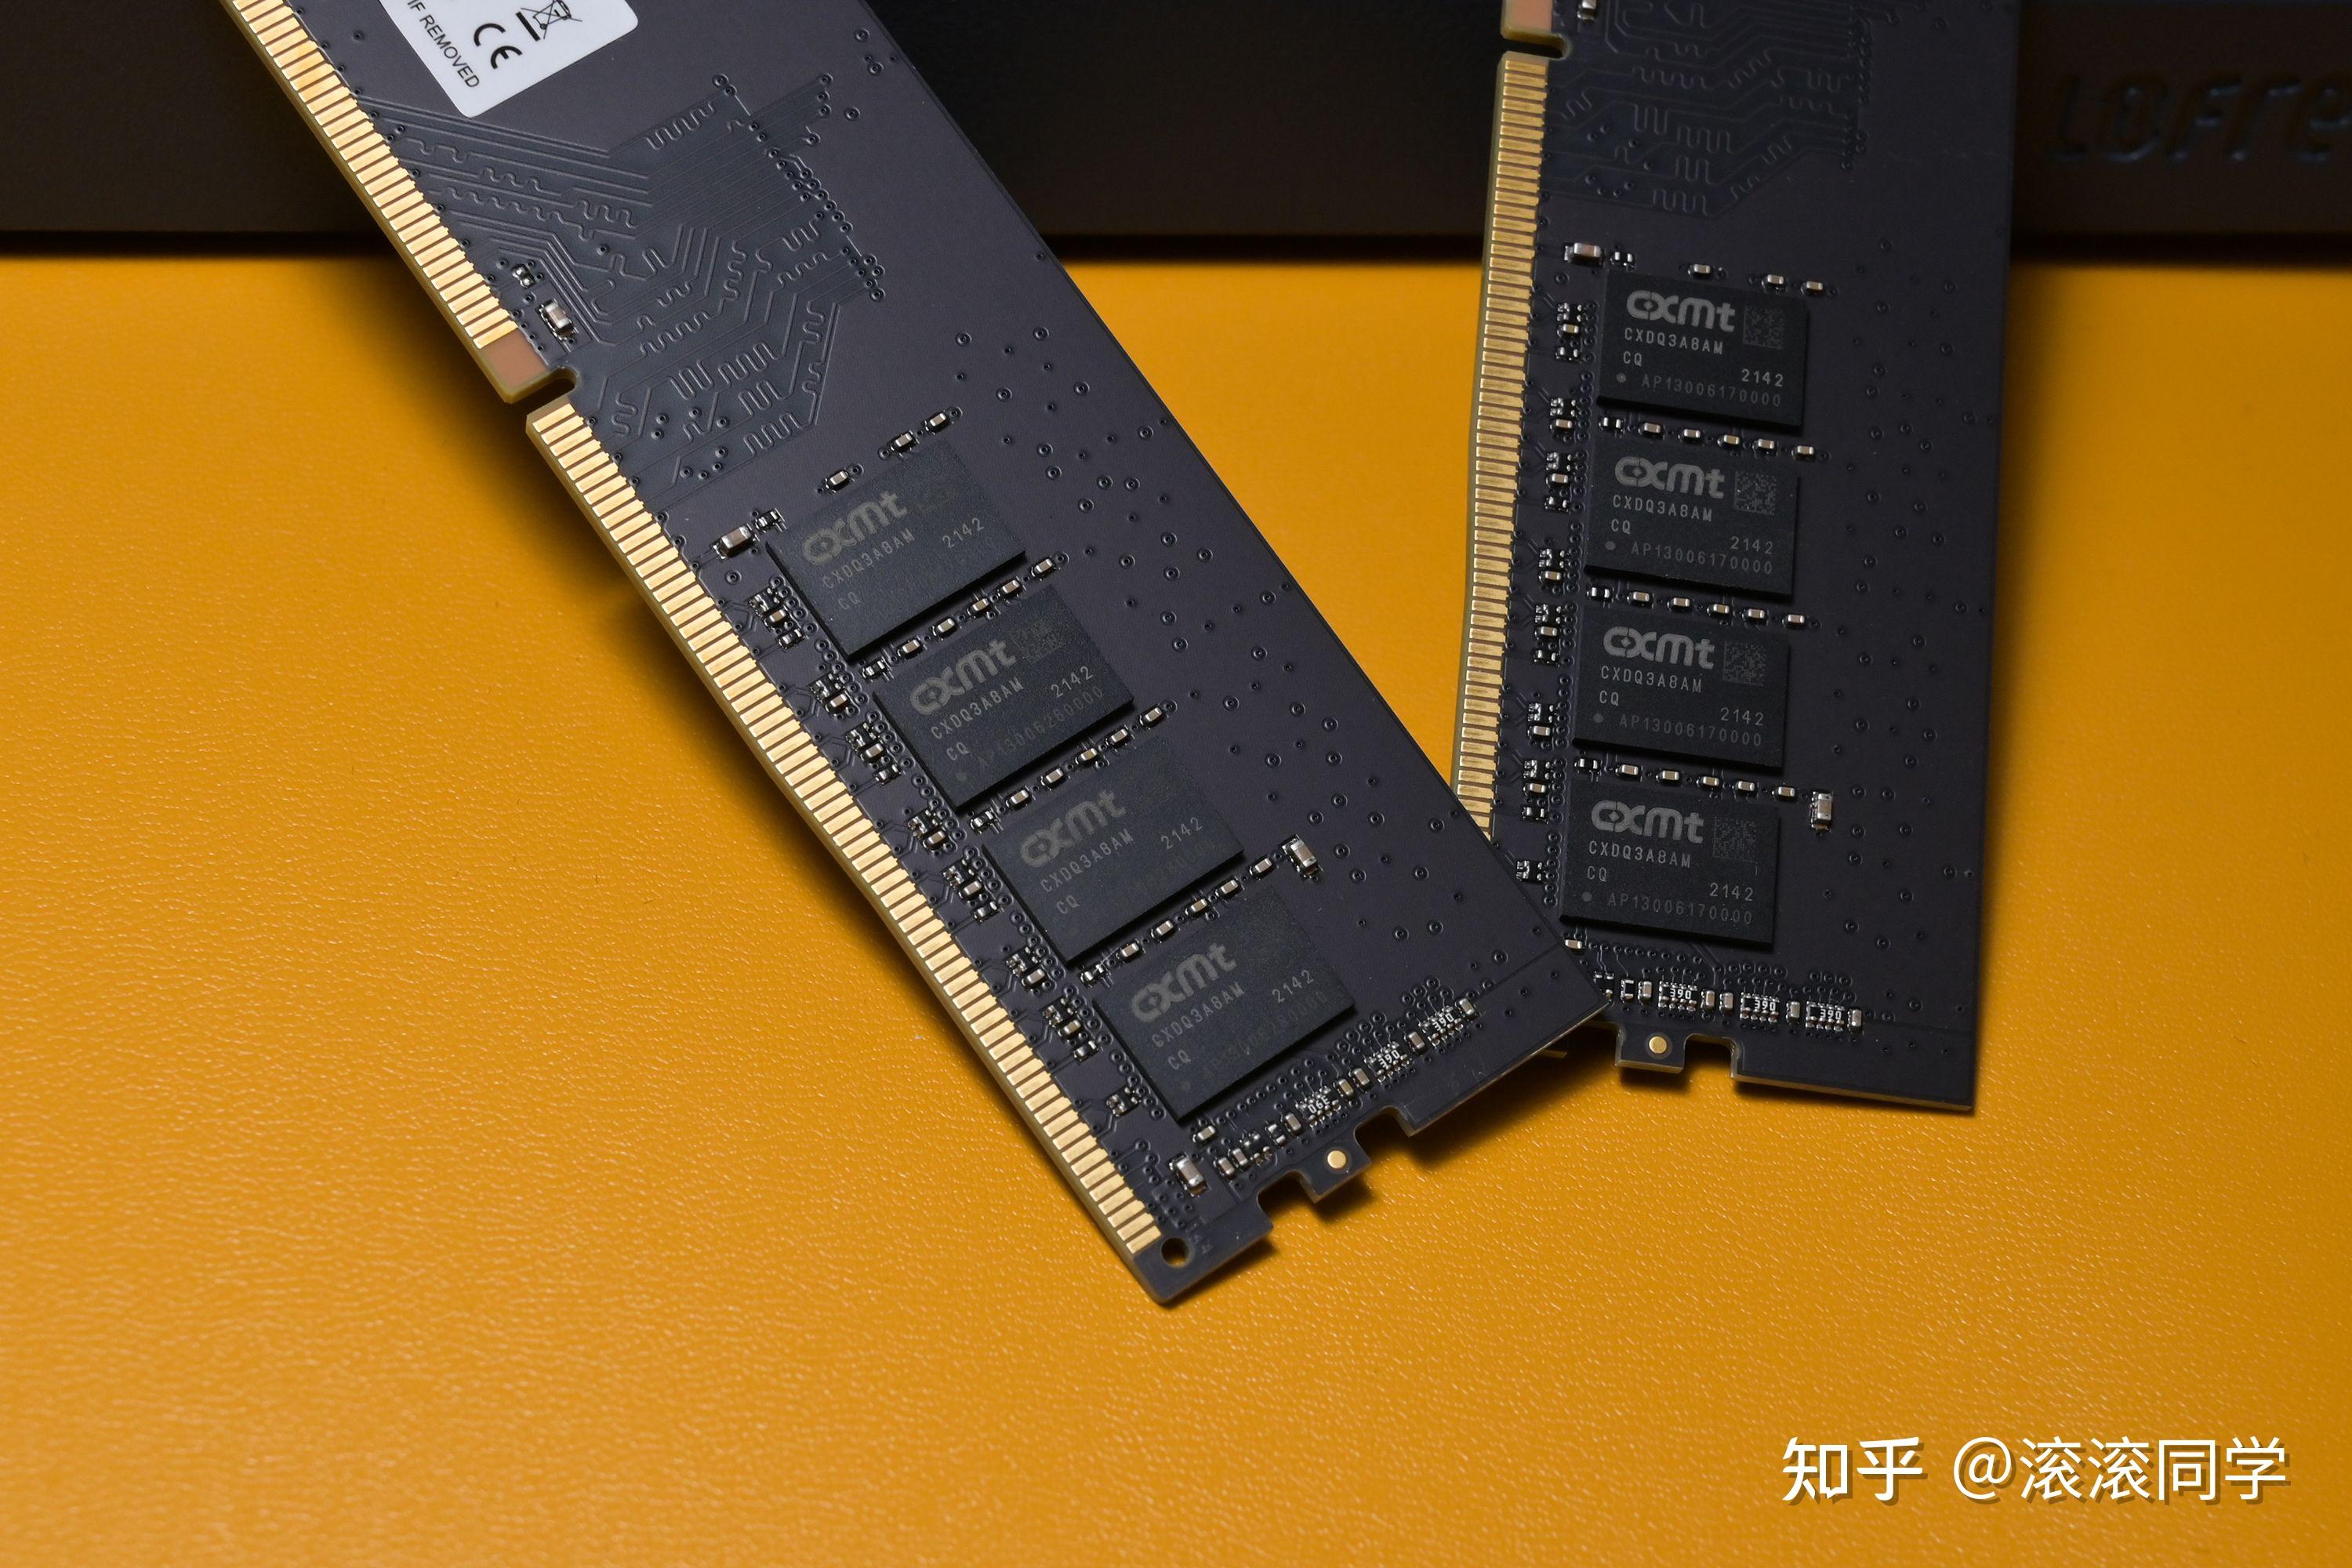 三星颗粒 DDR4 内存：高电压下的性能狂飙与挑战极限  第3张